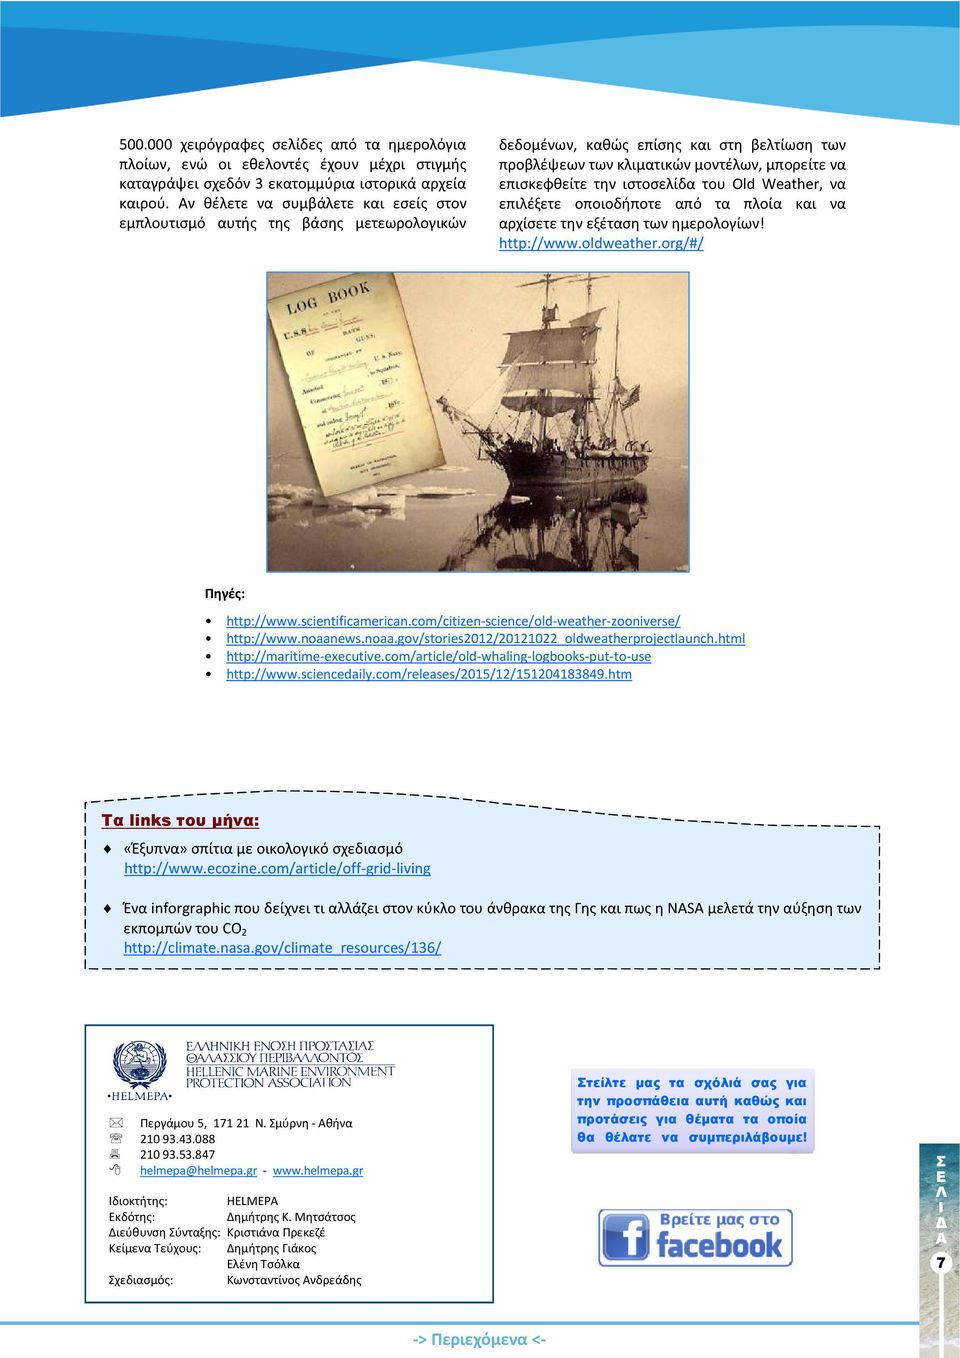 ιστοσελίδα του Old Weather, να επιλέξετε οποιοδήποτε από τα πλοία και να αρχίσετε την εξέταση των ημερολογίων! http://www.oldweather.org/#/ Πηγές: http://www.scientificamerican.